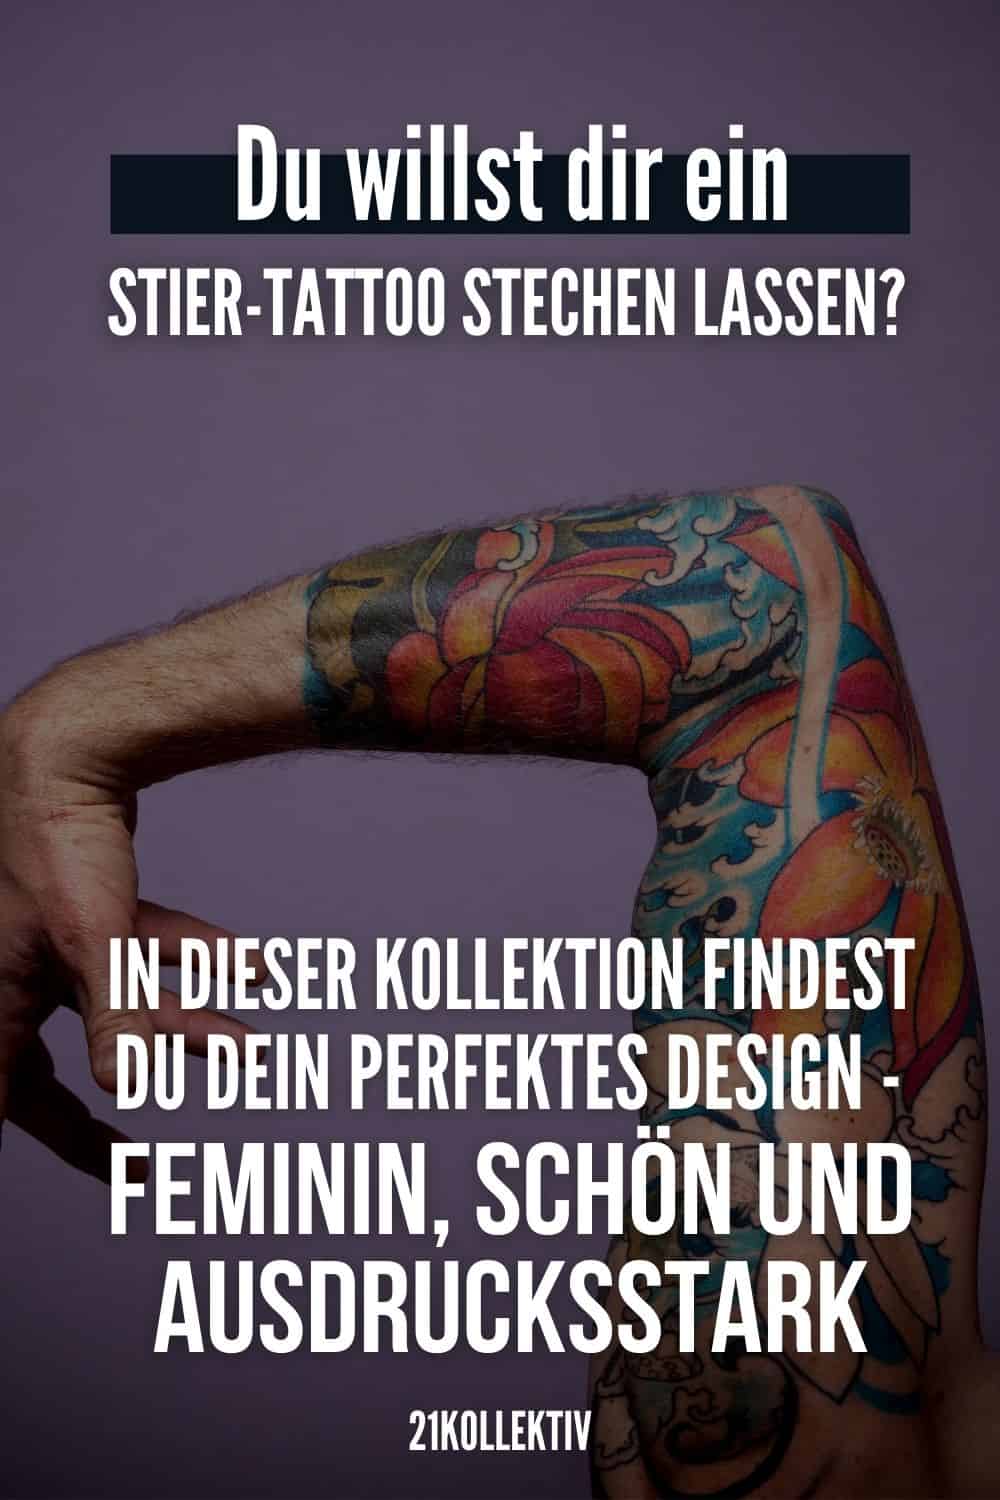 Du willst dir ein Stier-Tattoo stechen lassen? In dieser Kollektion findest du dein perfektes Design - feminin, schön und ausdrucksstark